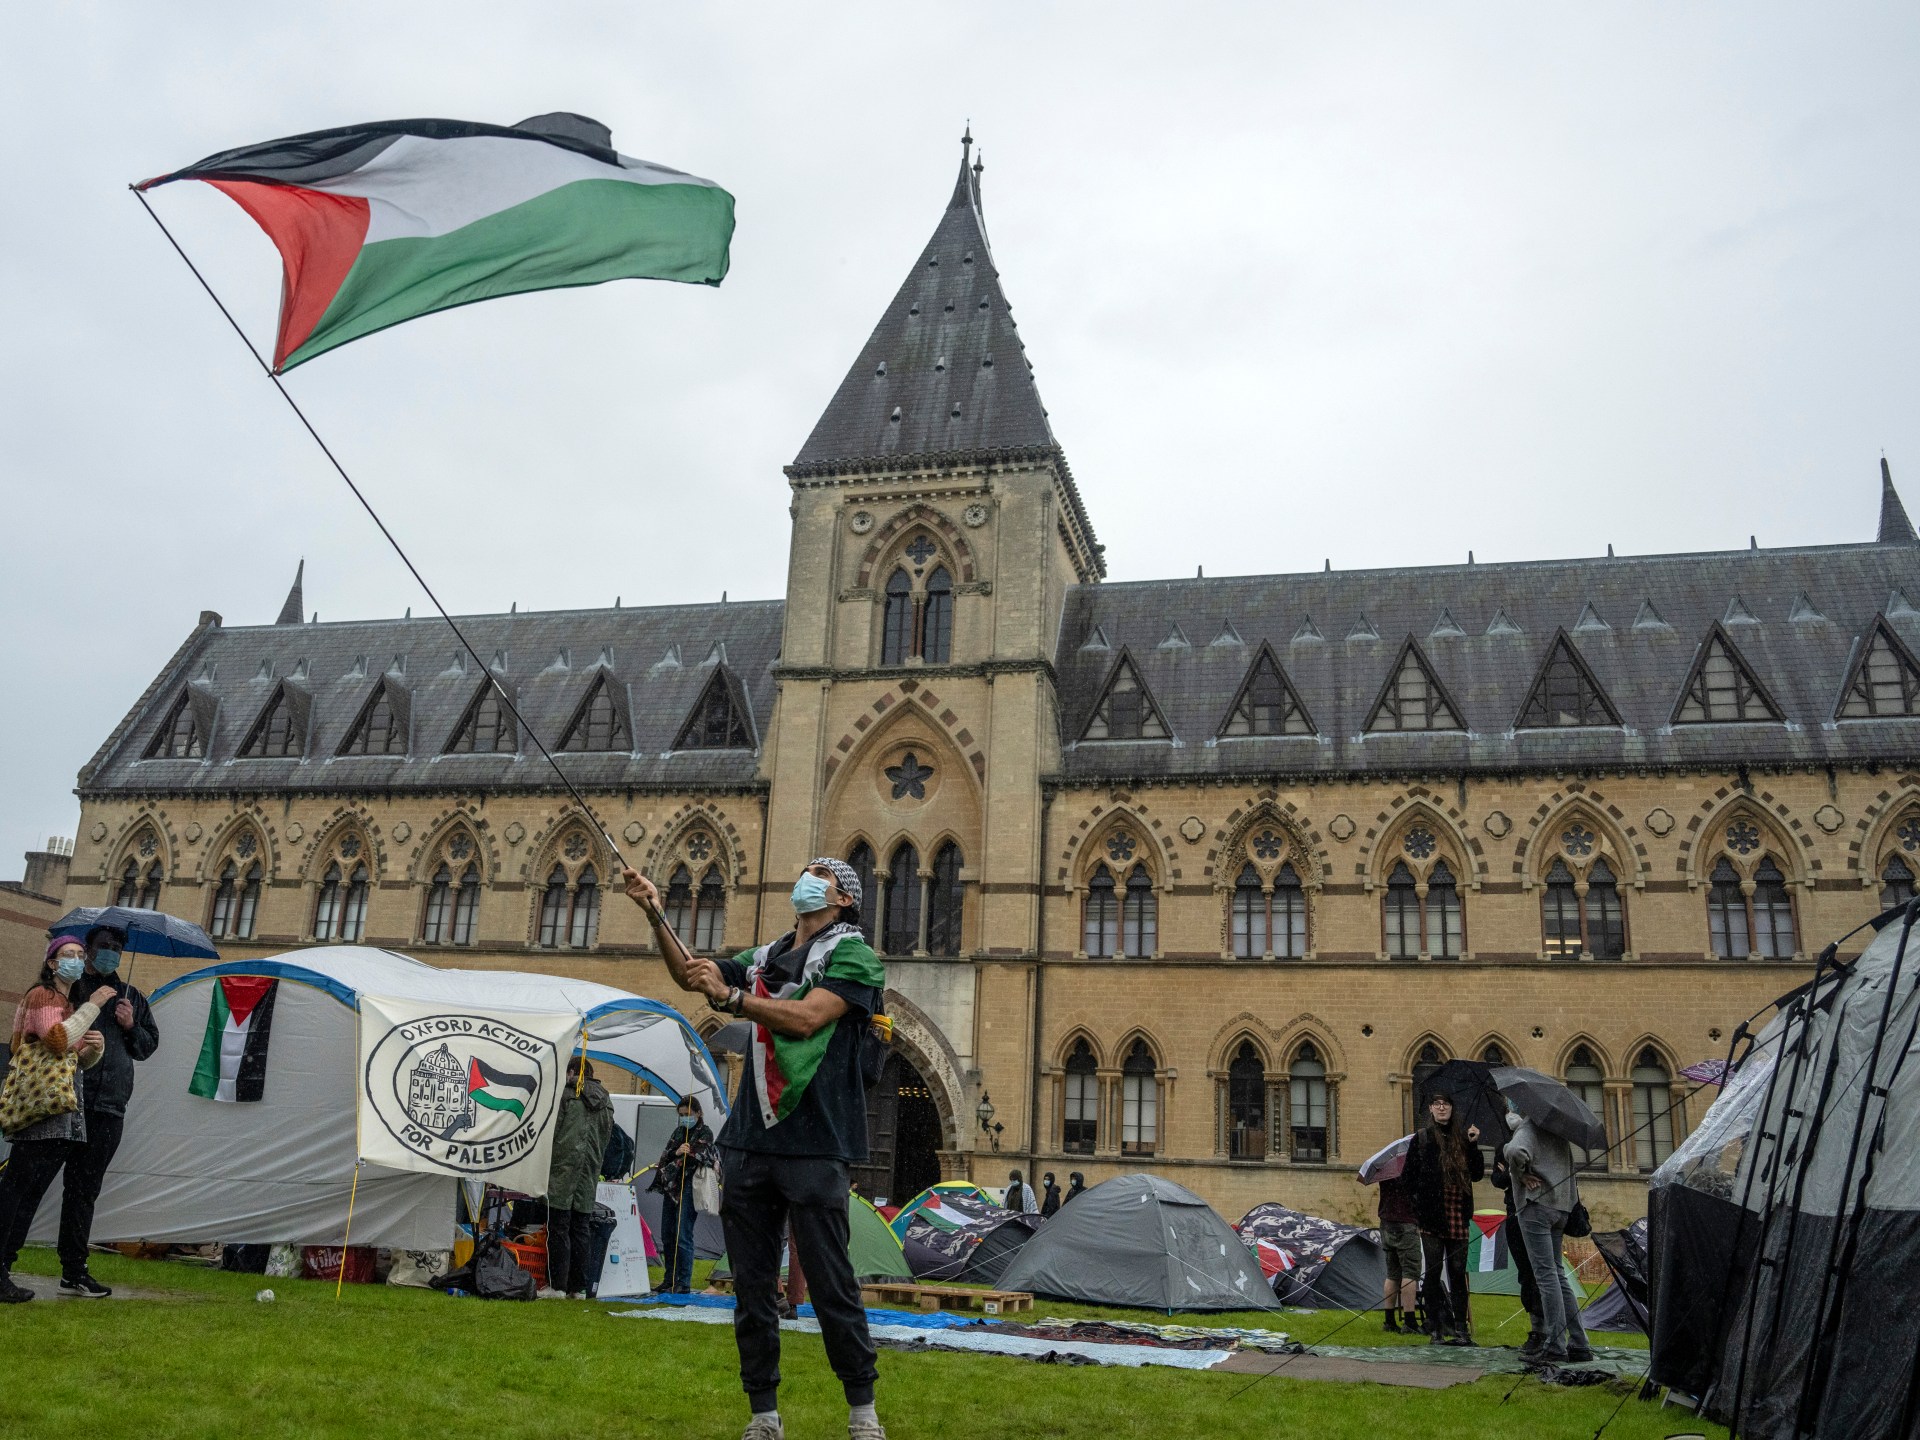 الشرطة تشتبك وتعتقل متظاهرين باعتصام مؤيد للفلسطينيين بجامعة أكسفورد | أخبار – البوكس نيوز